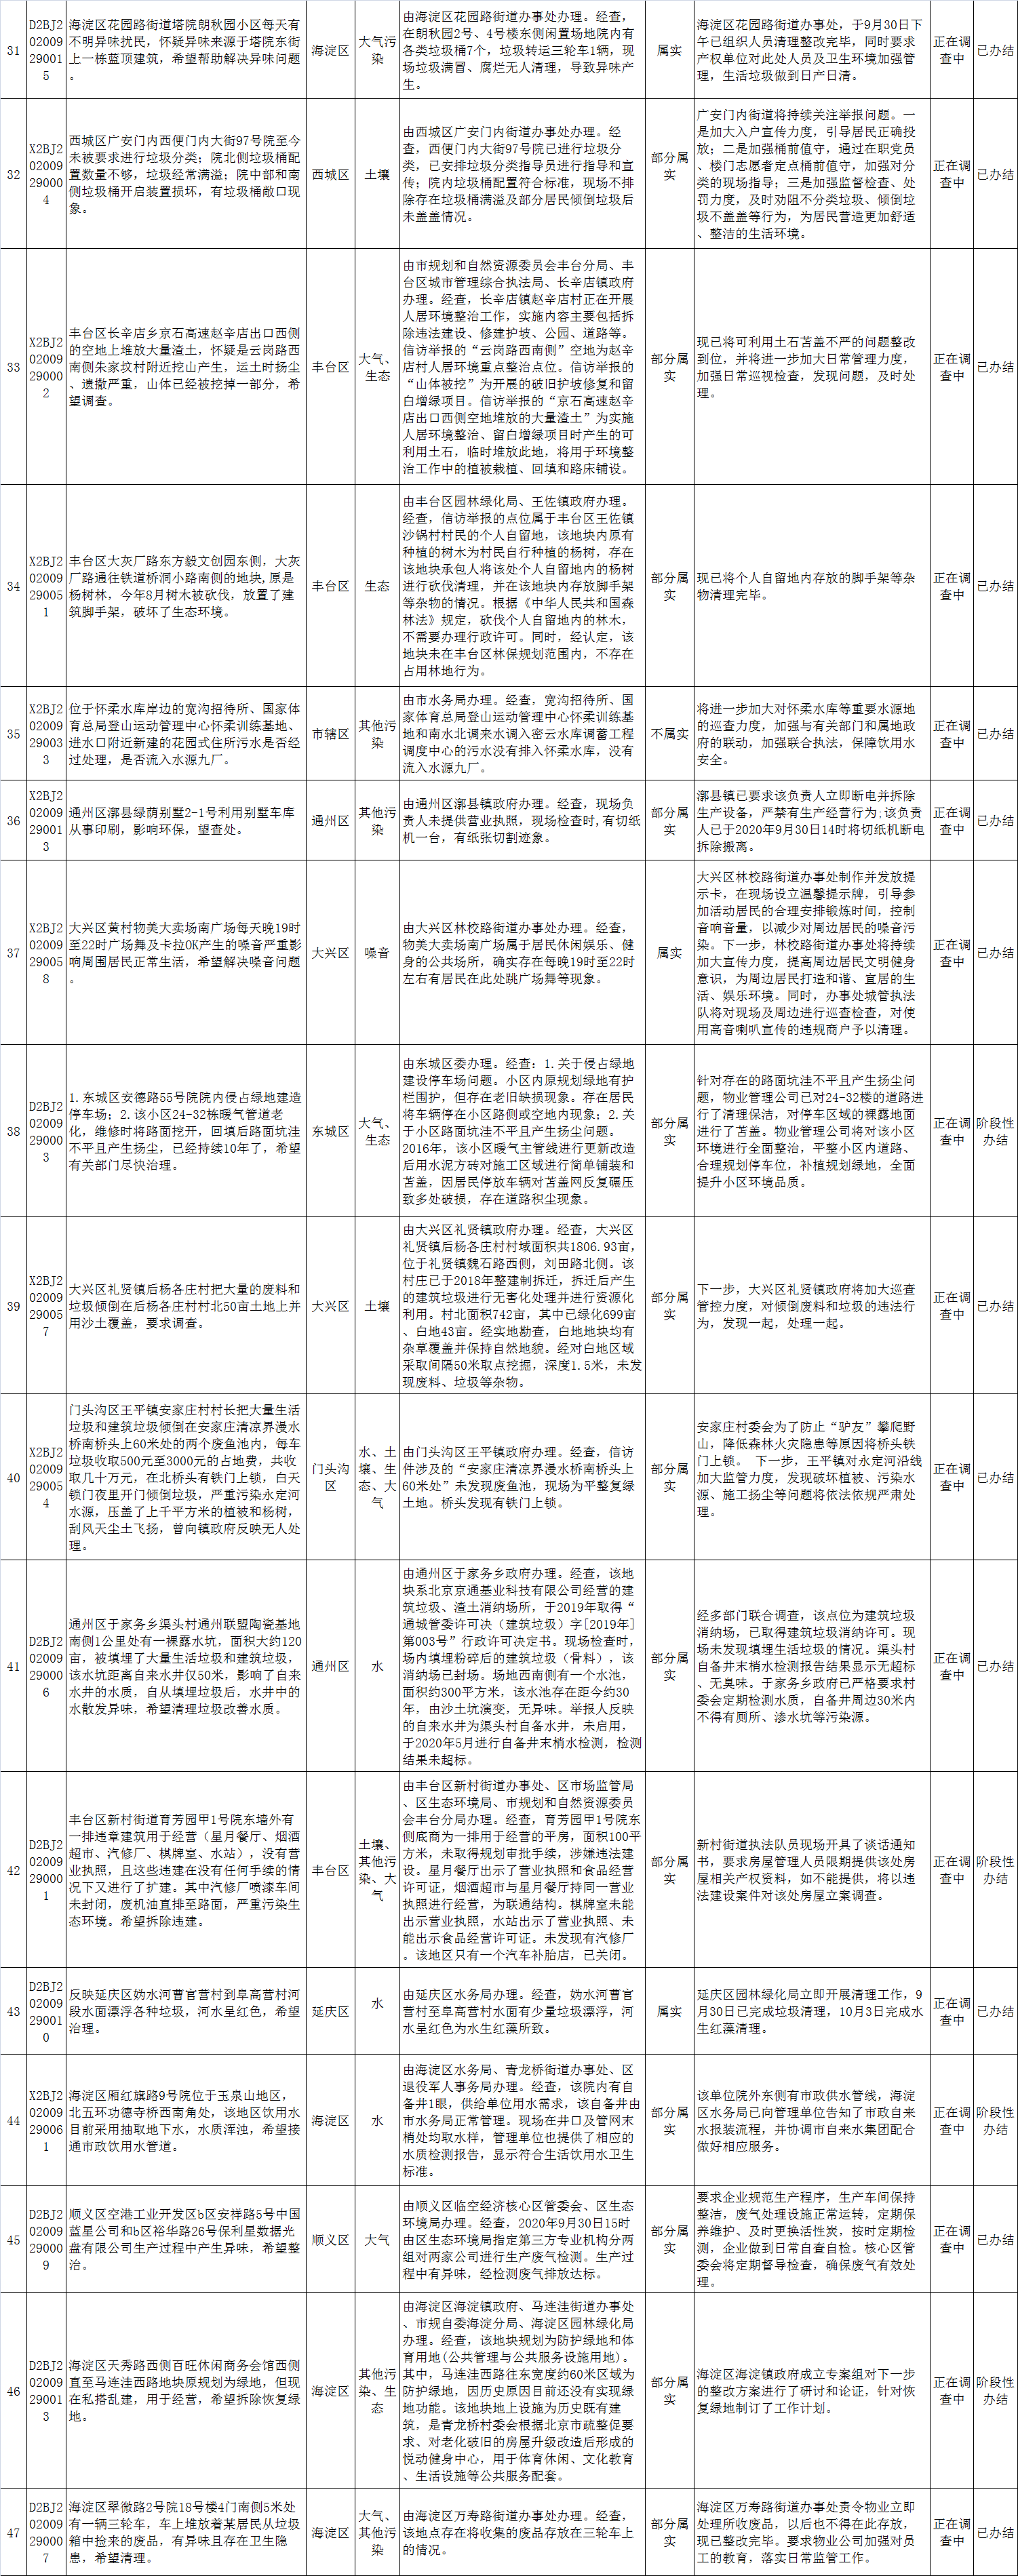 北京市群眾信訪舉報轉辦和邊督邊改公開情況一覽表(第三十批)